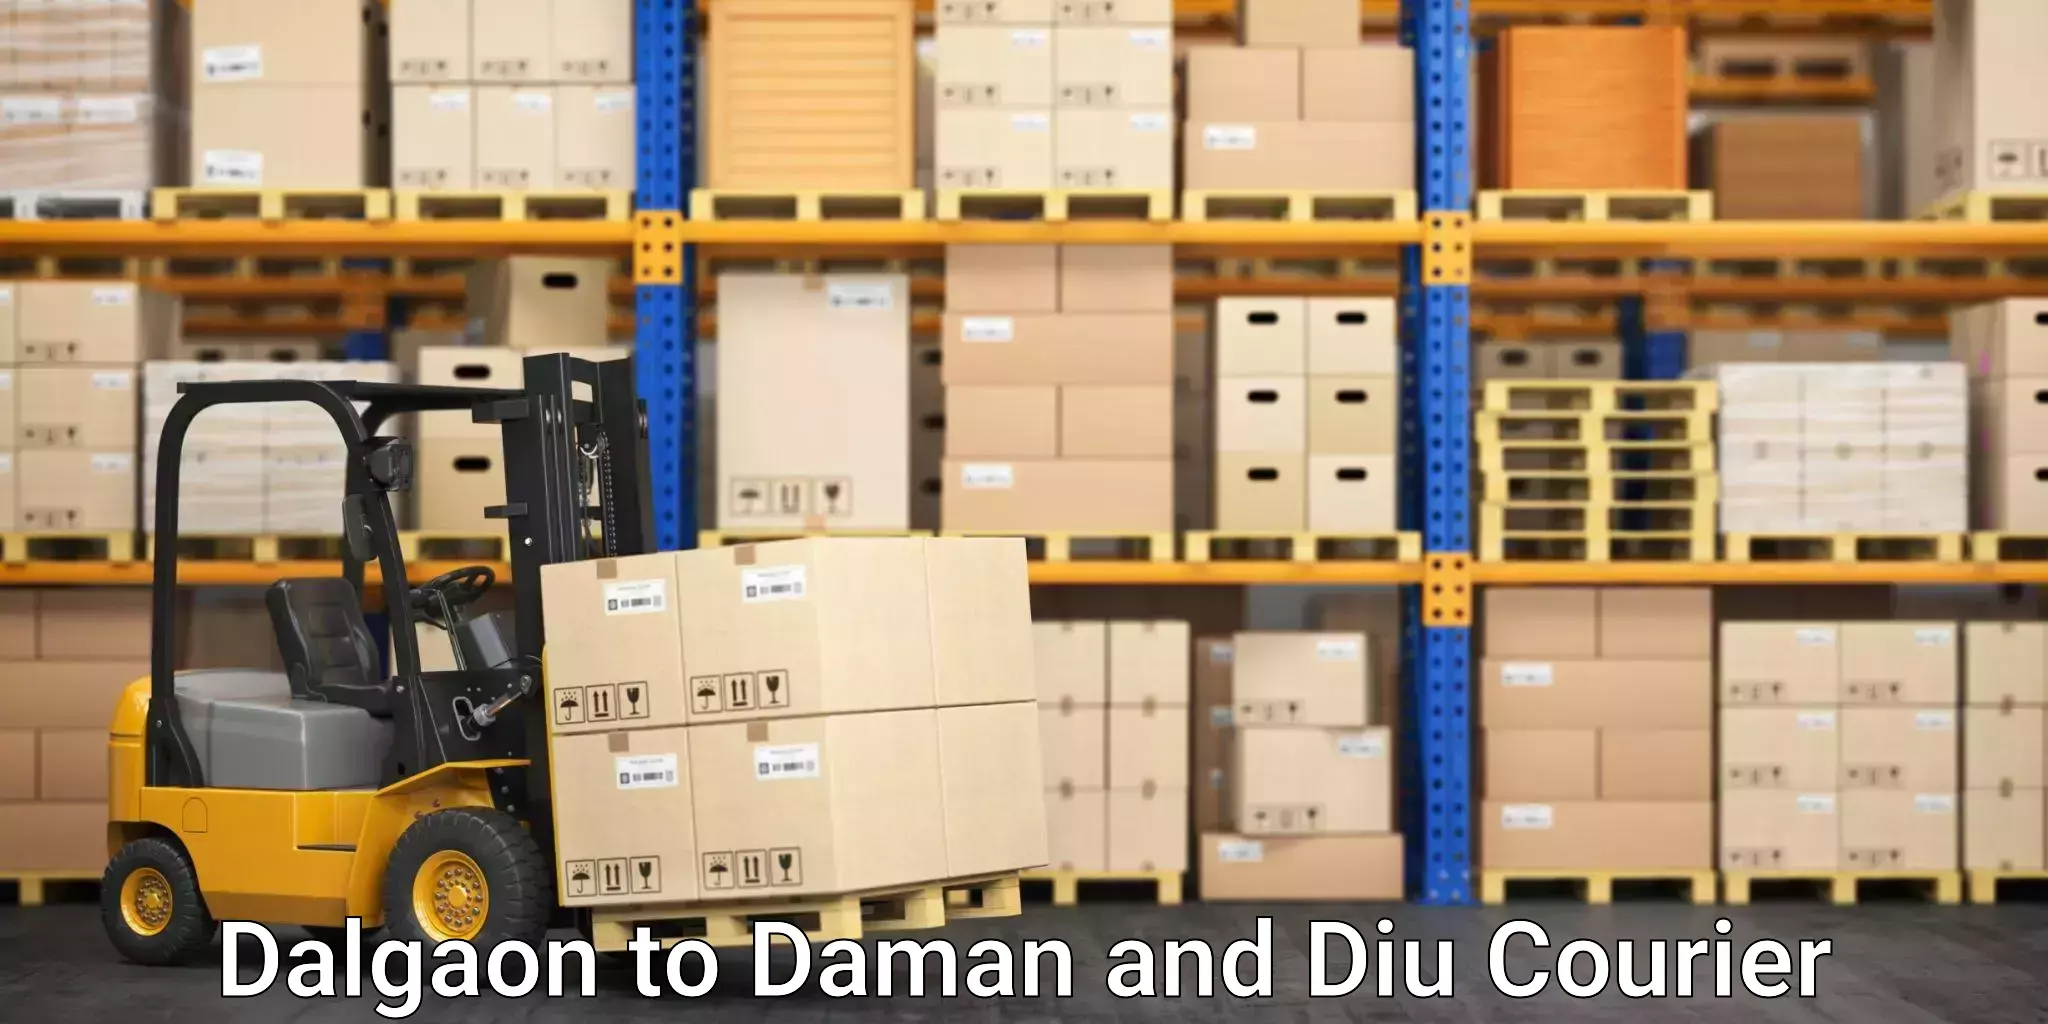 Courier service comparison Dalgaon to Daman